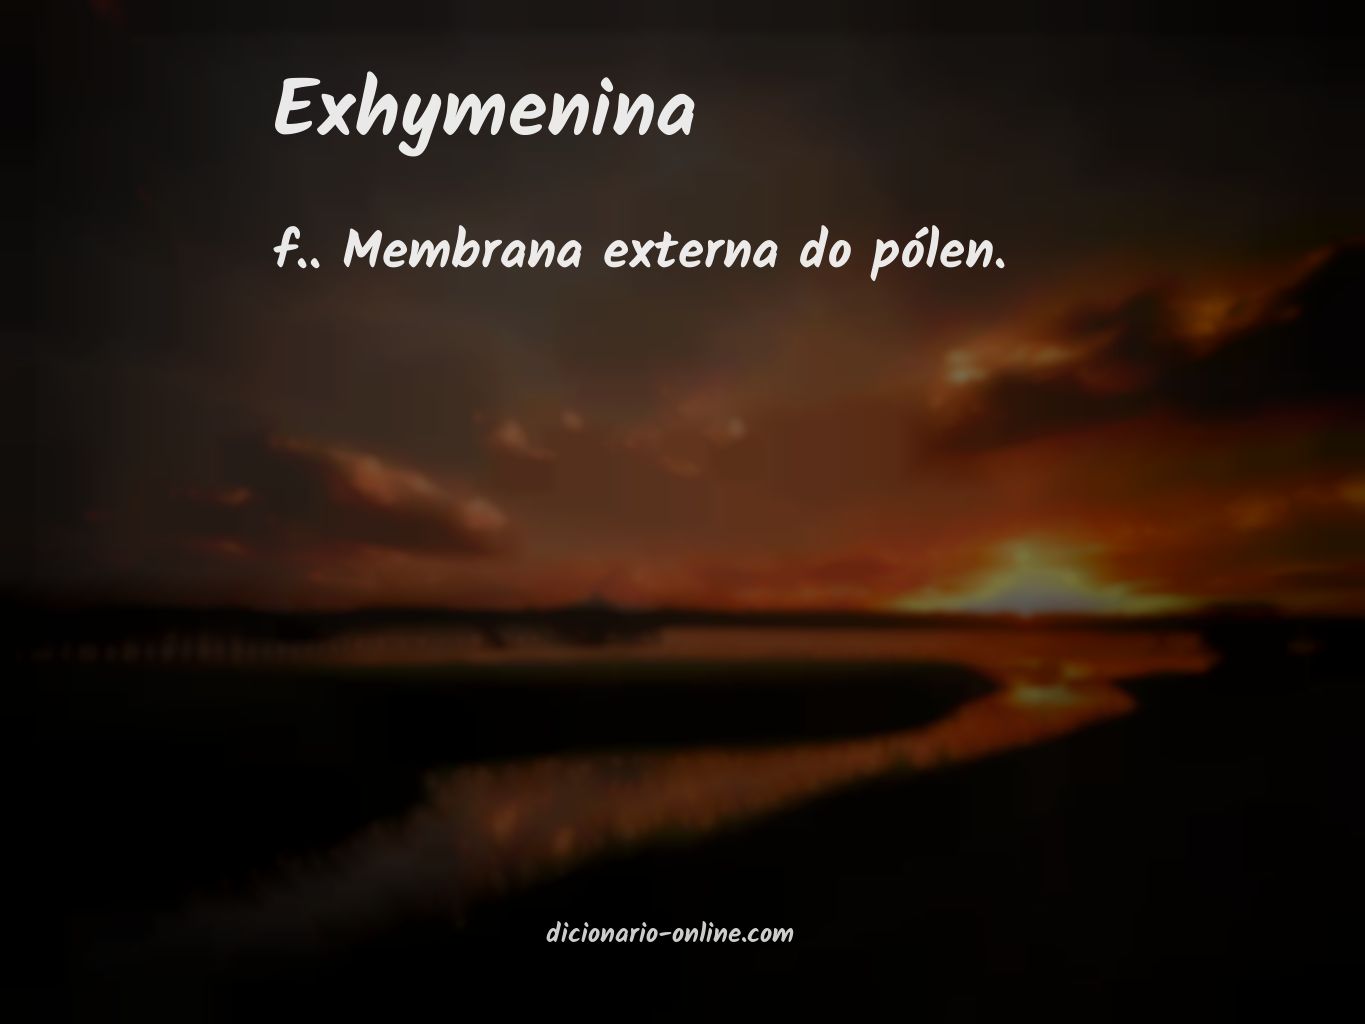 Significado de exhymenina